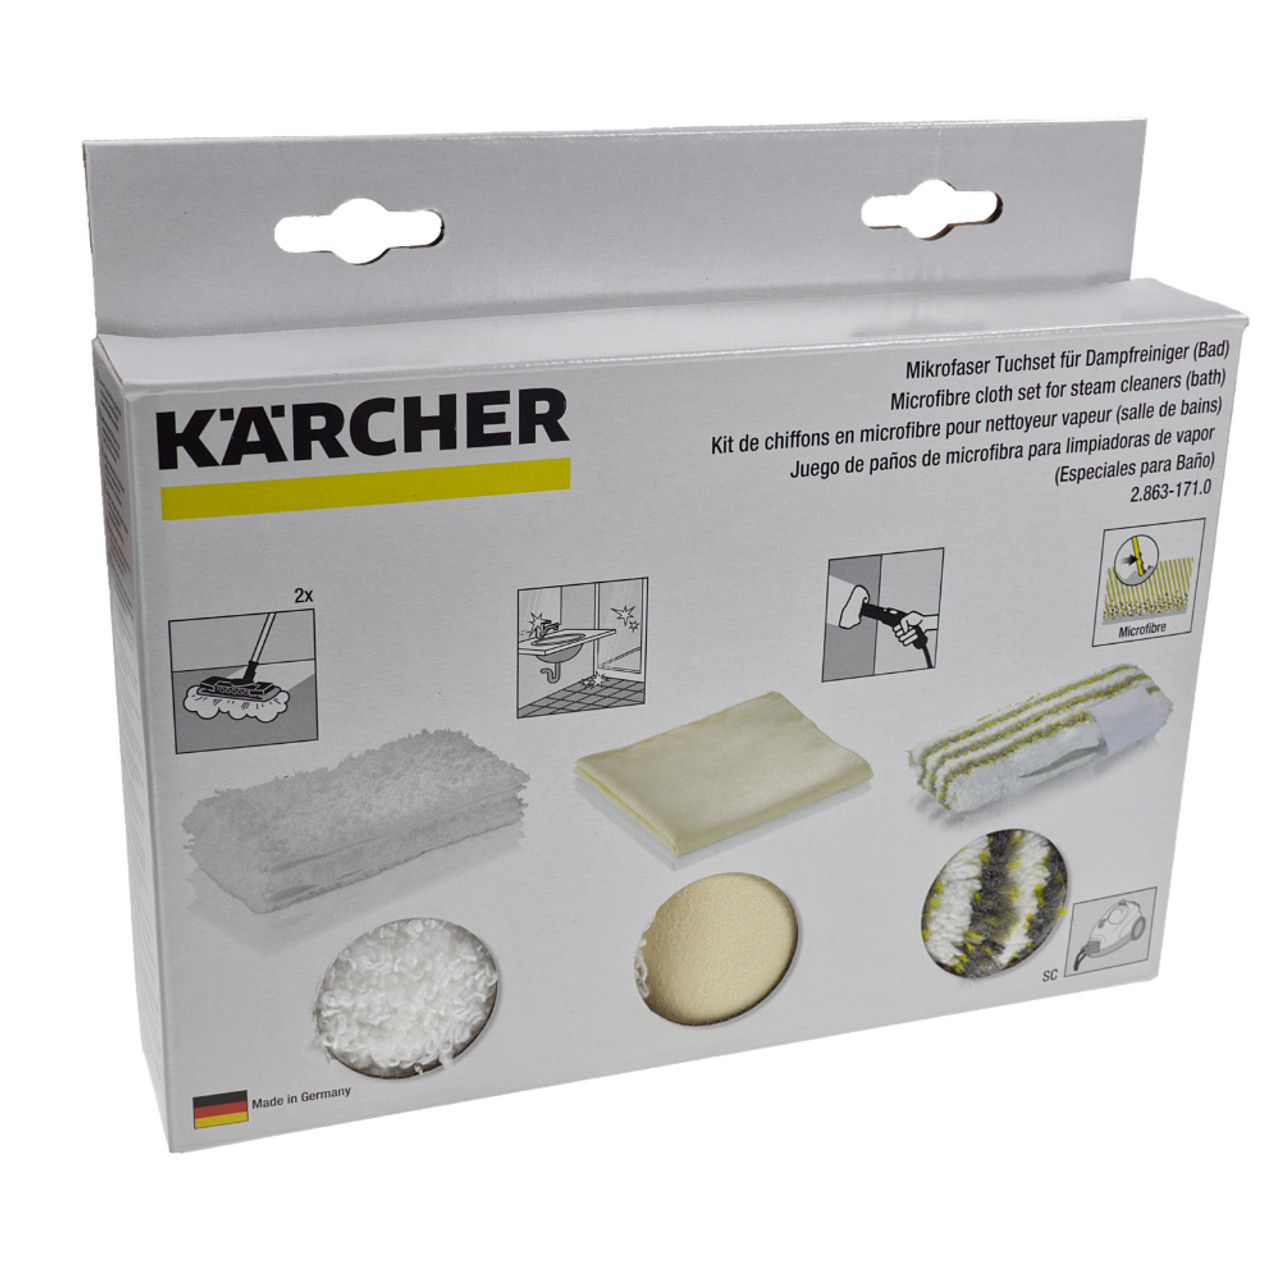 Kit De Chiffons En Microfibres Pour Nettoyeur Vapeur (Salle De Bains)  Karcher